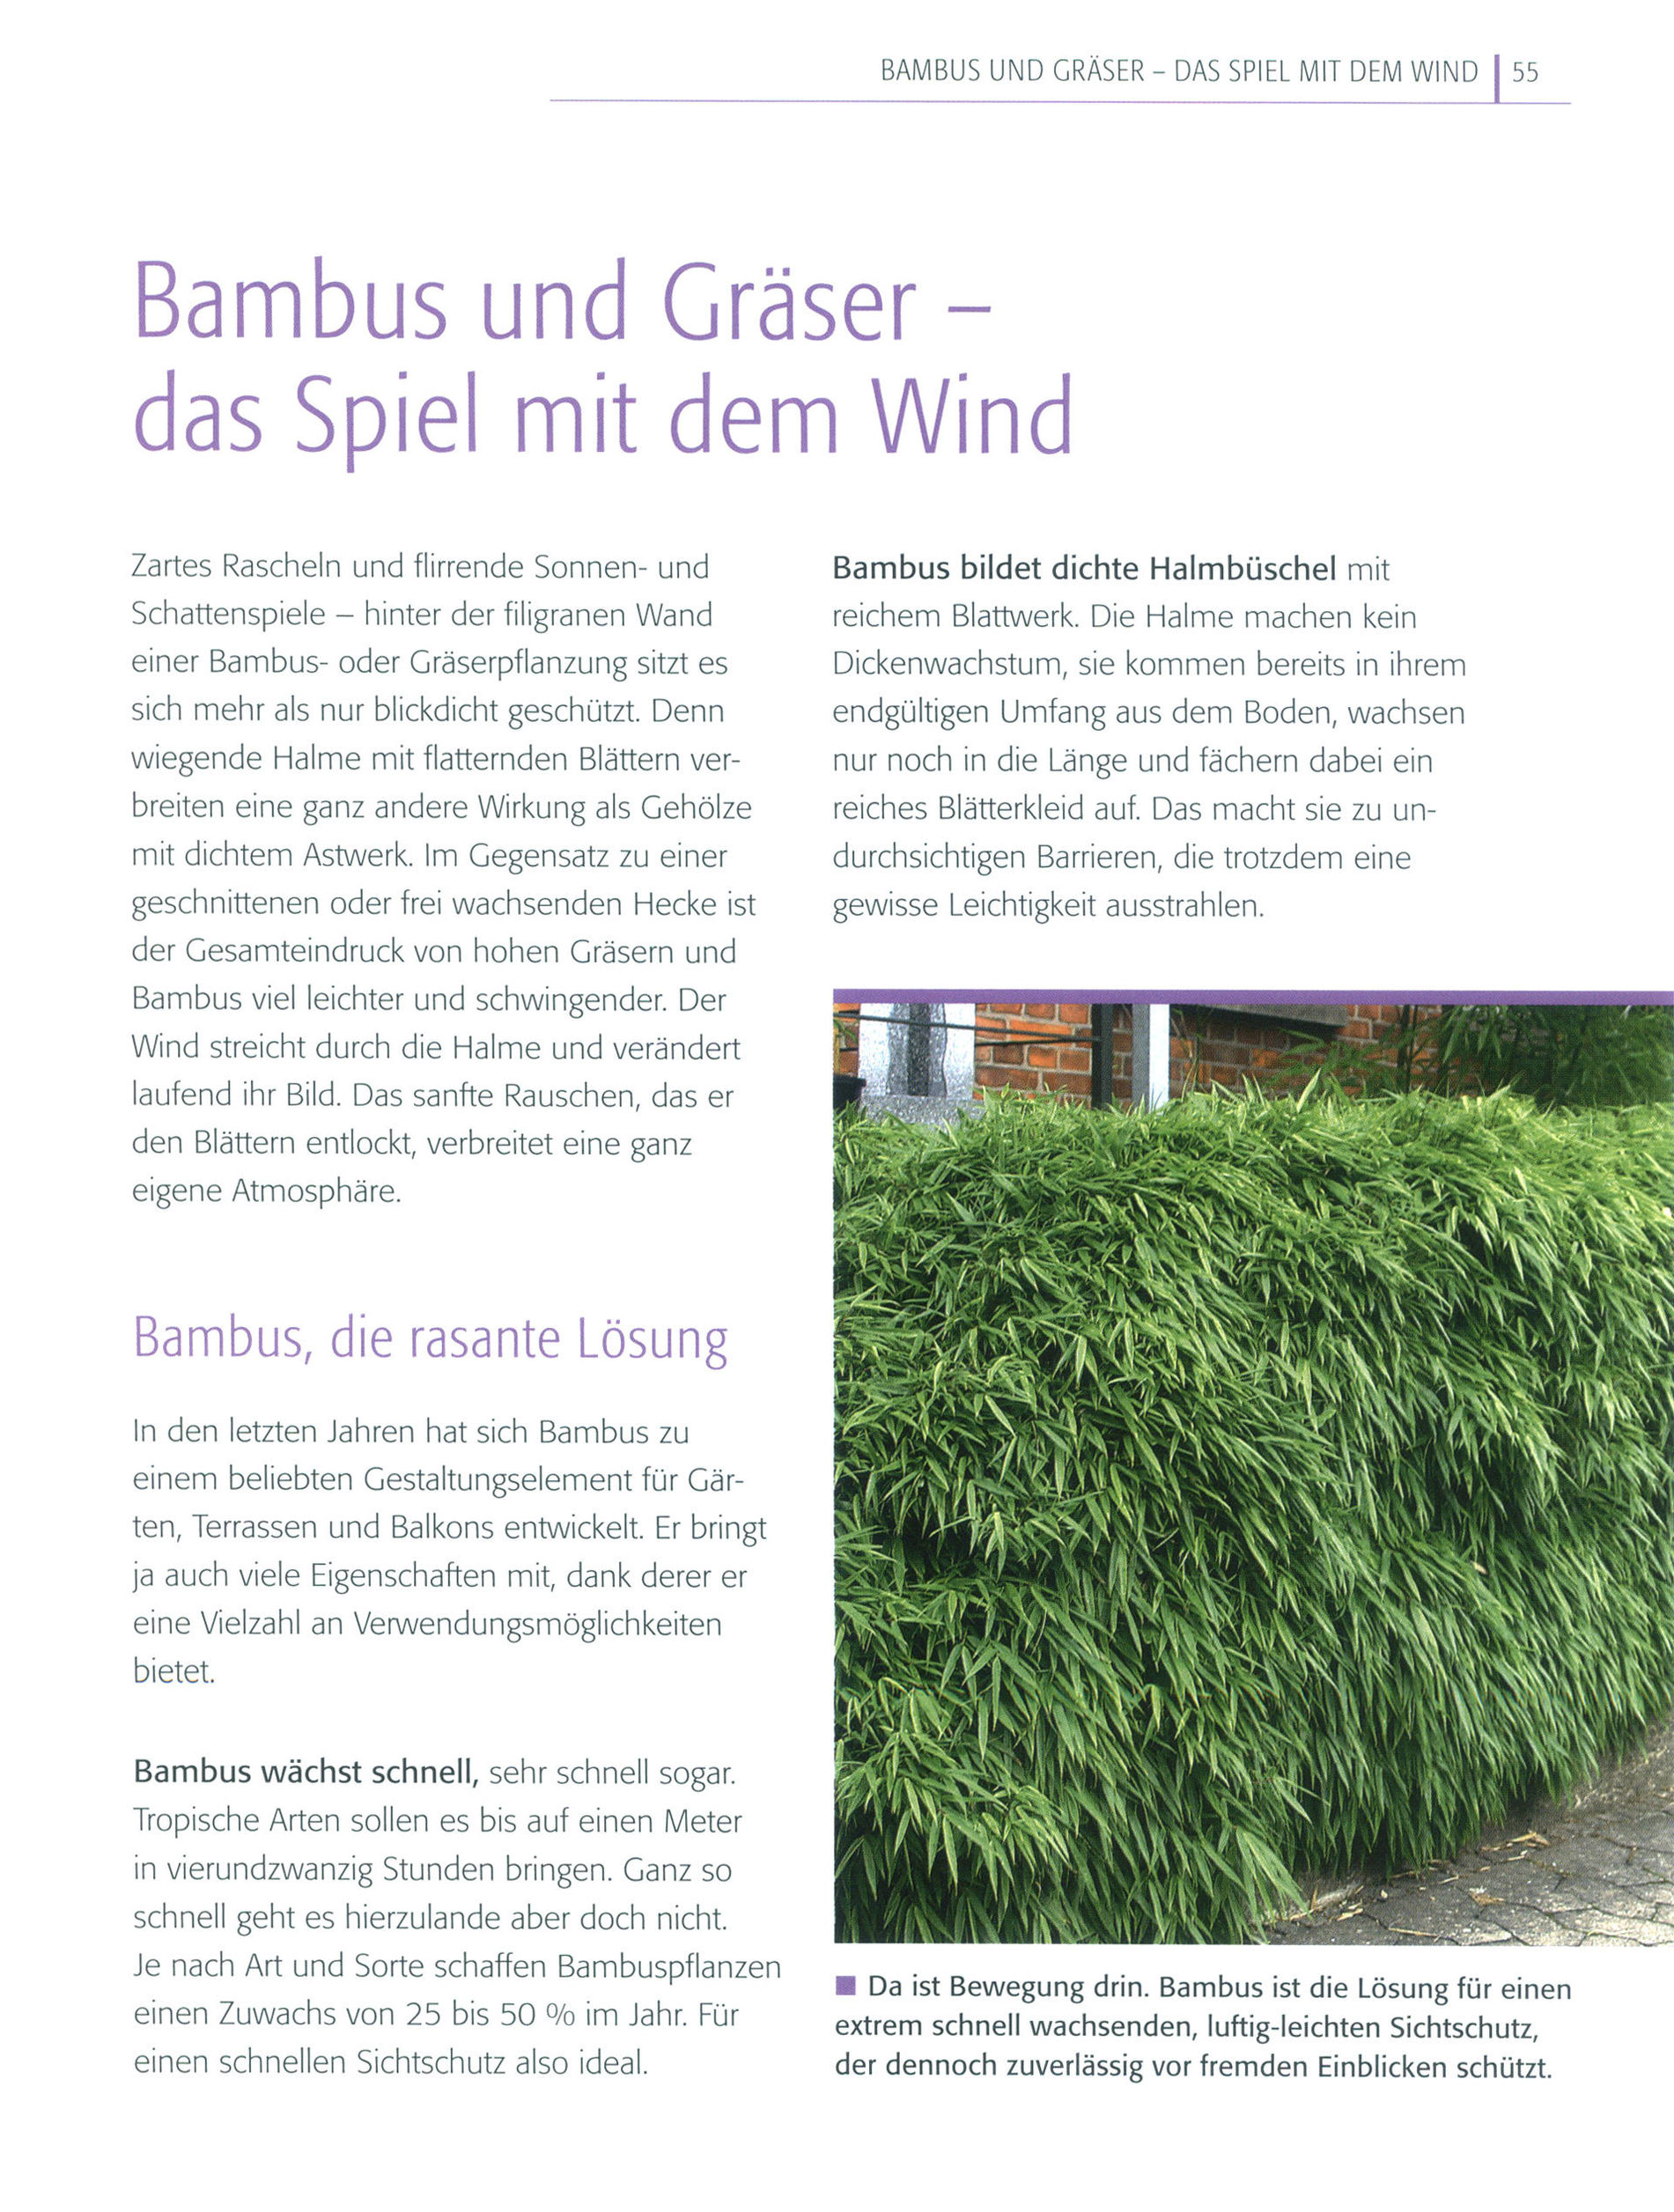 Sichtschutz Buch von Bärbel Faschingbauer versandkostenfrei - Weltbild.de